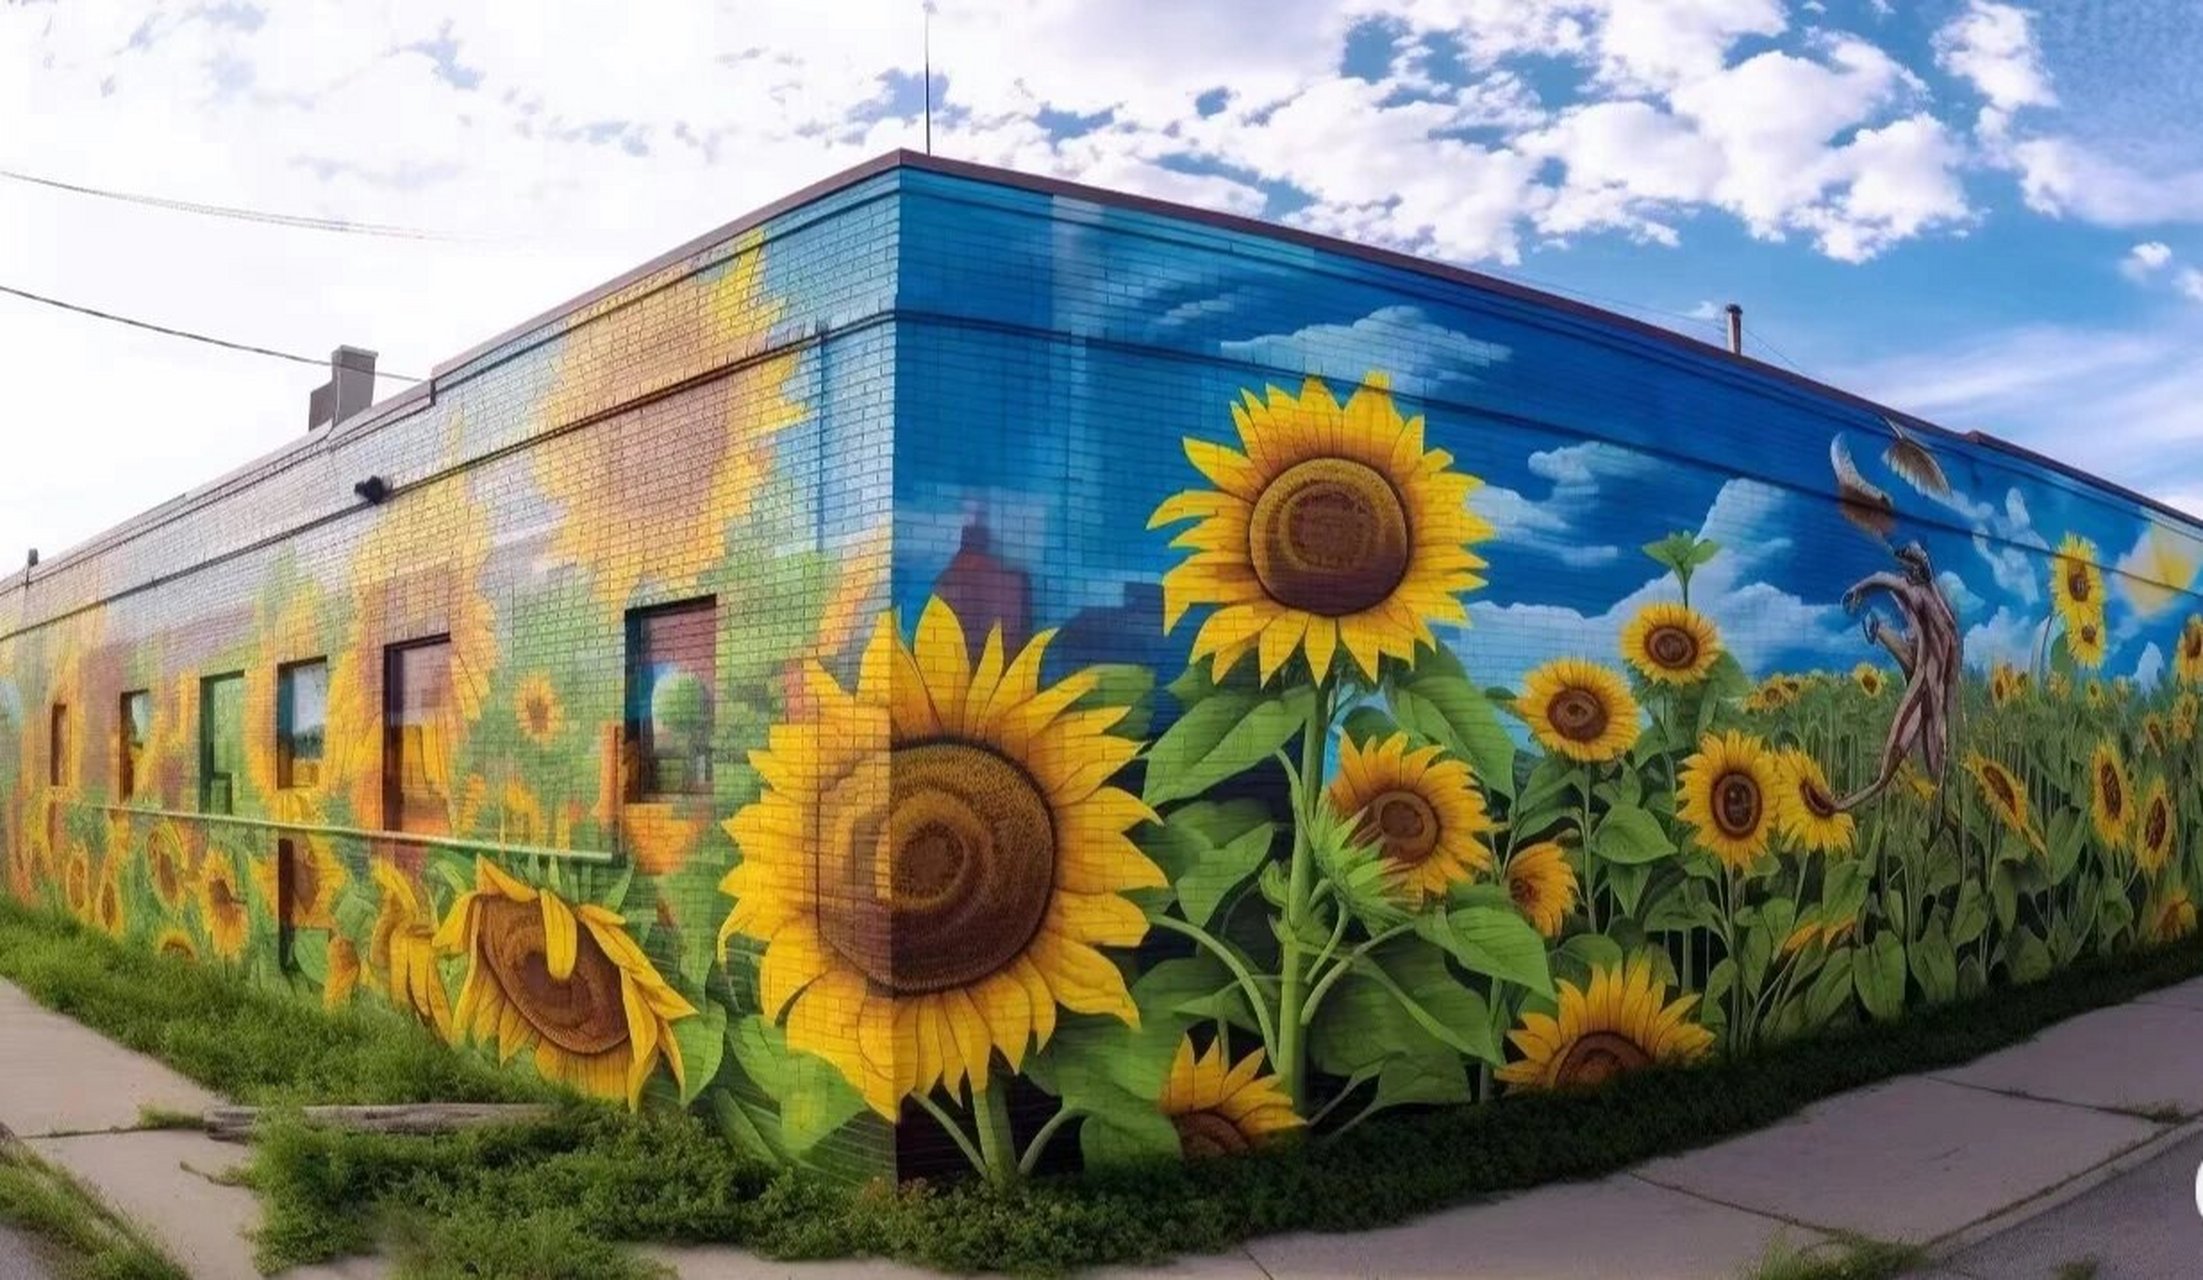 向日葵97花海手绘墙 墙绘向日葵,当你路过一面满是花朵的墙会不会